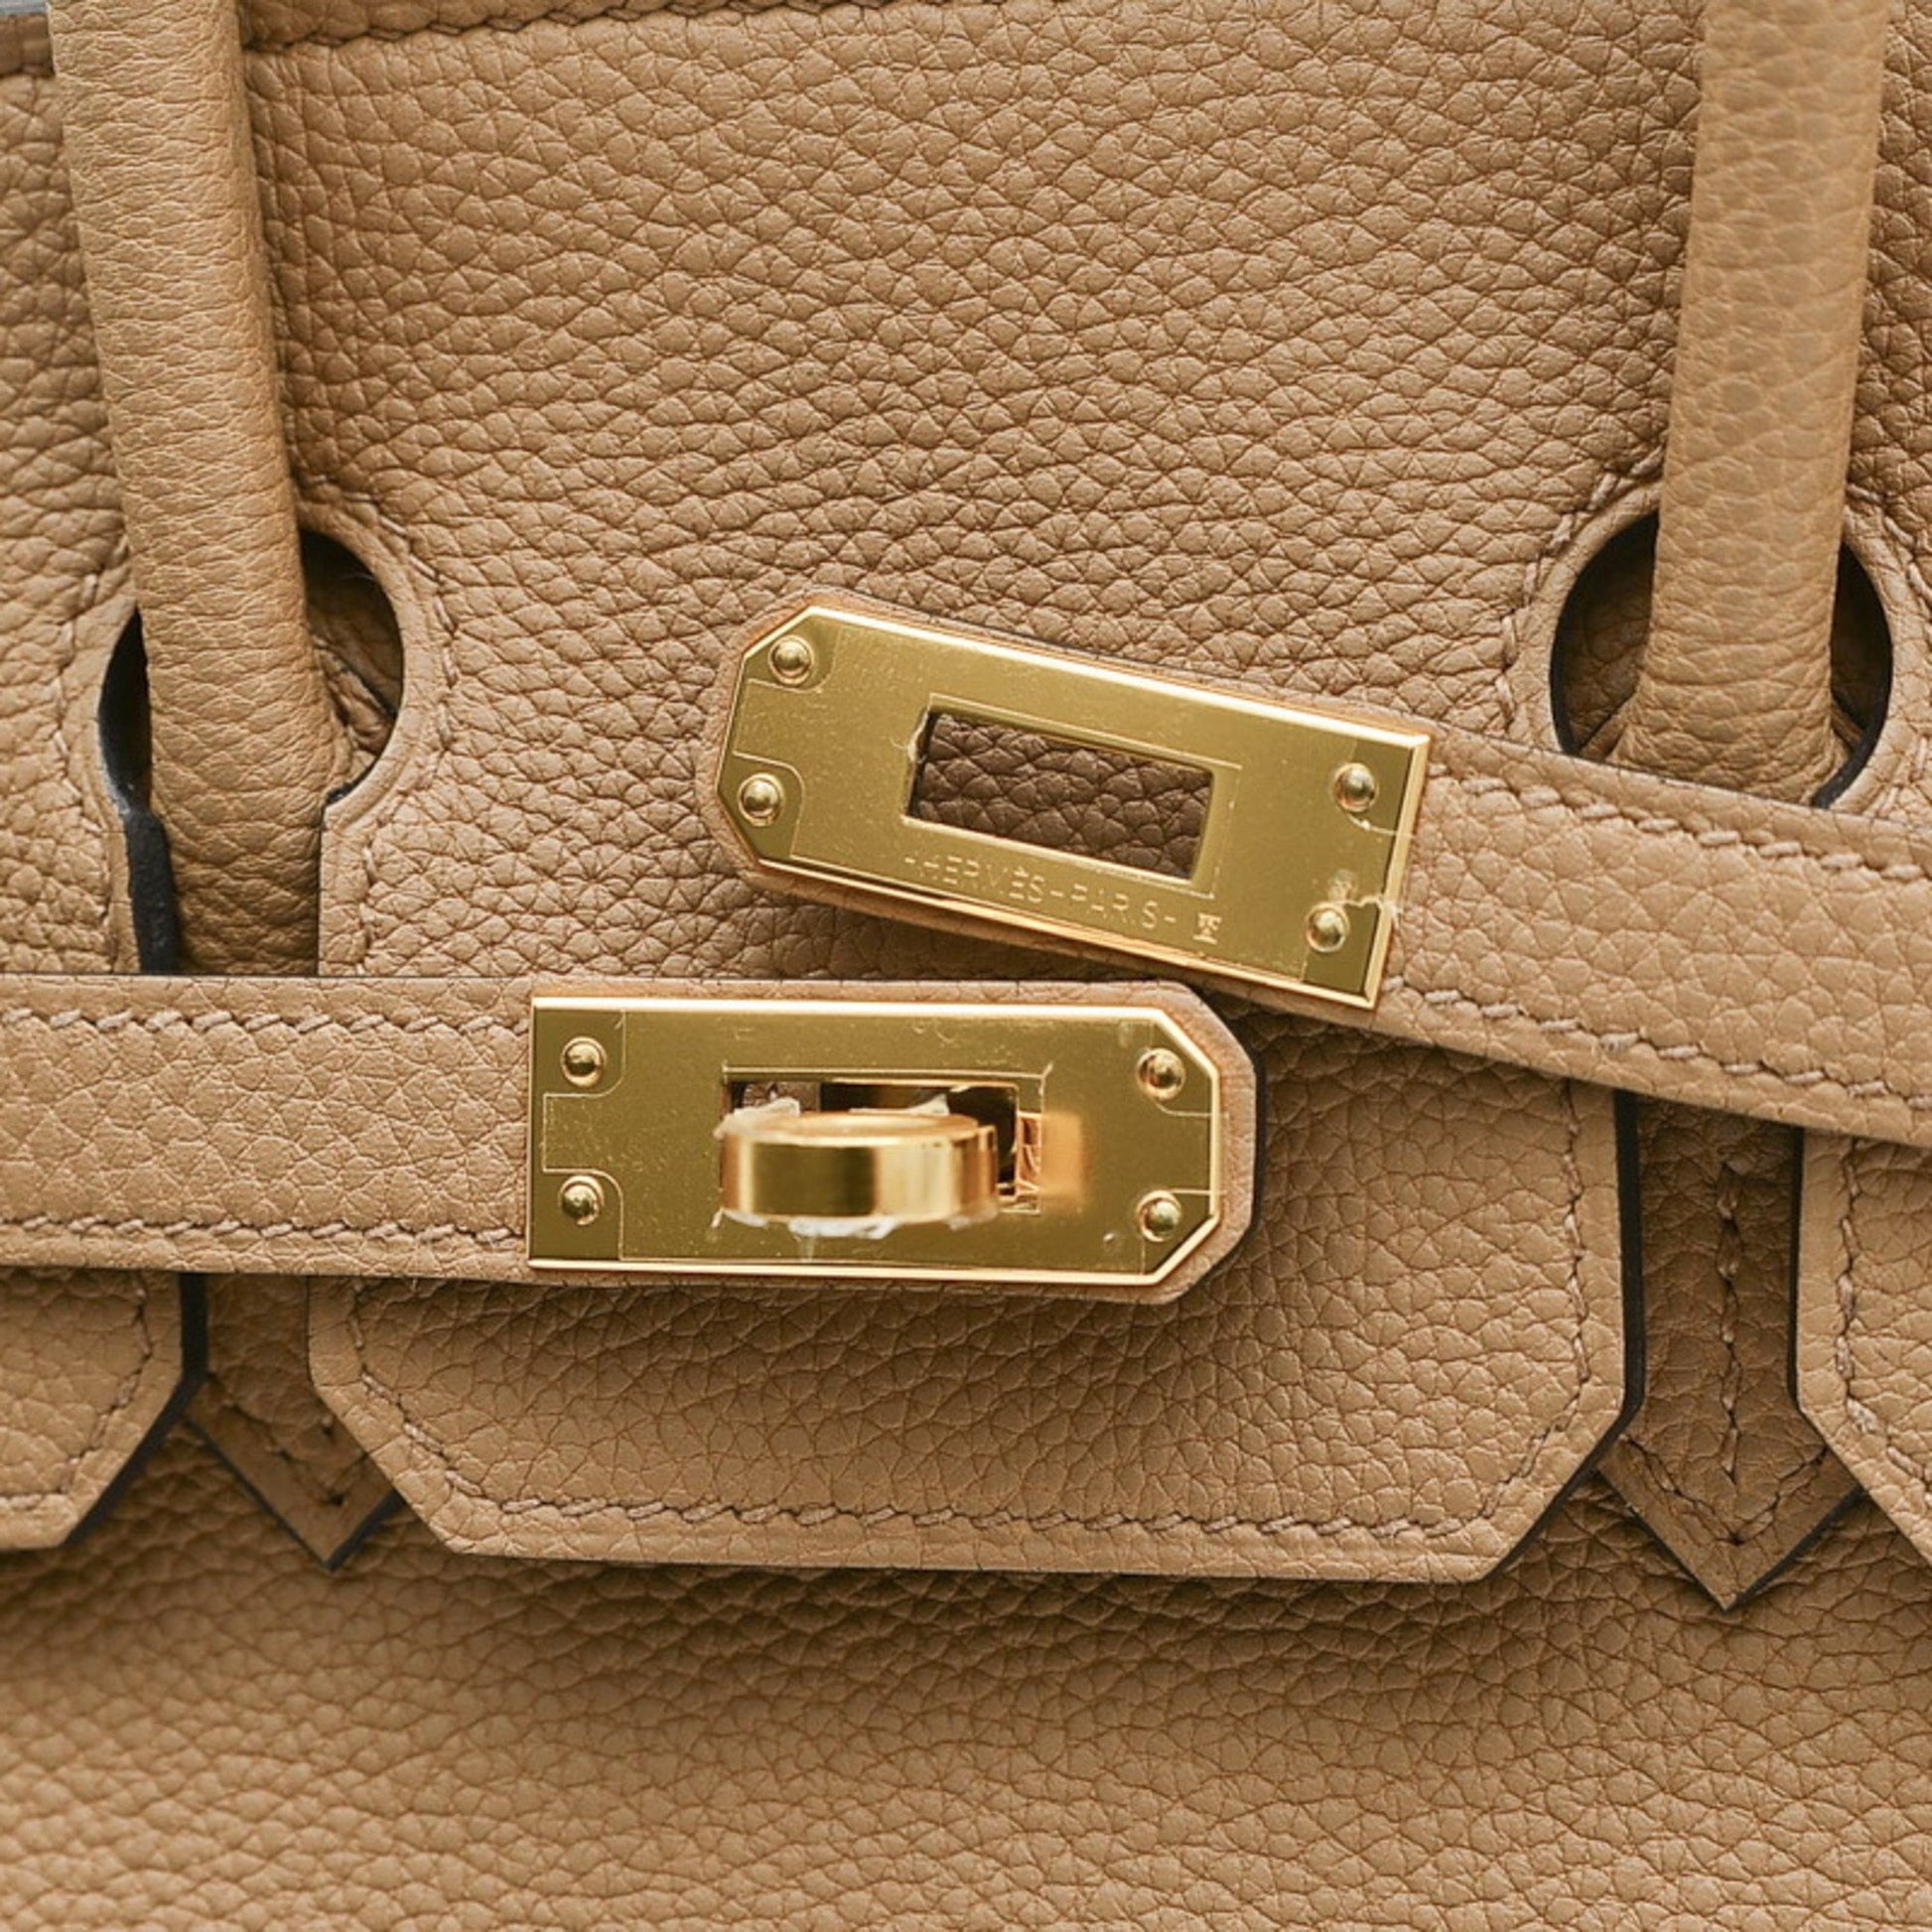 Hermes Birkin 25 Togo Chai Handbag Gold Hardware U Engraved Hermes